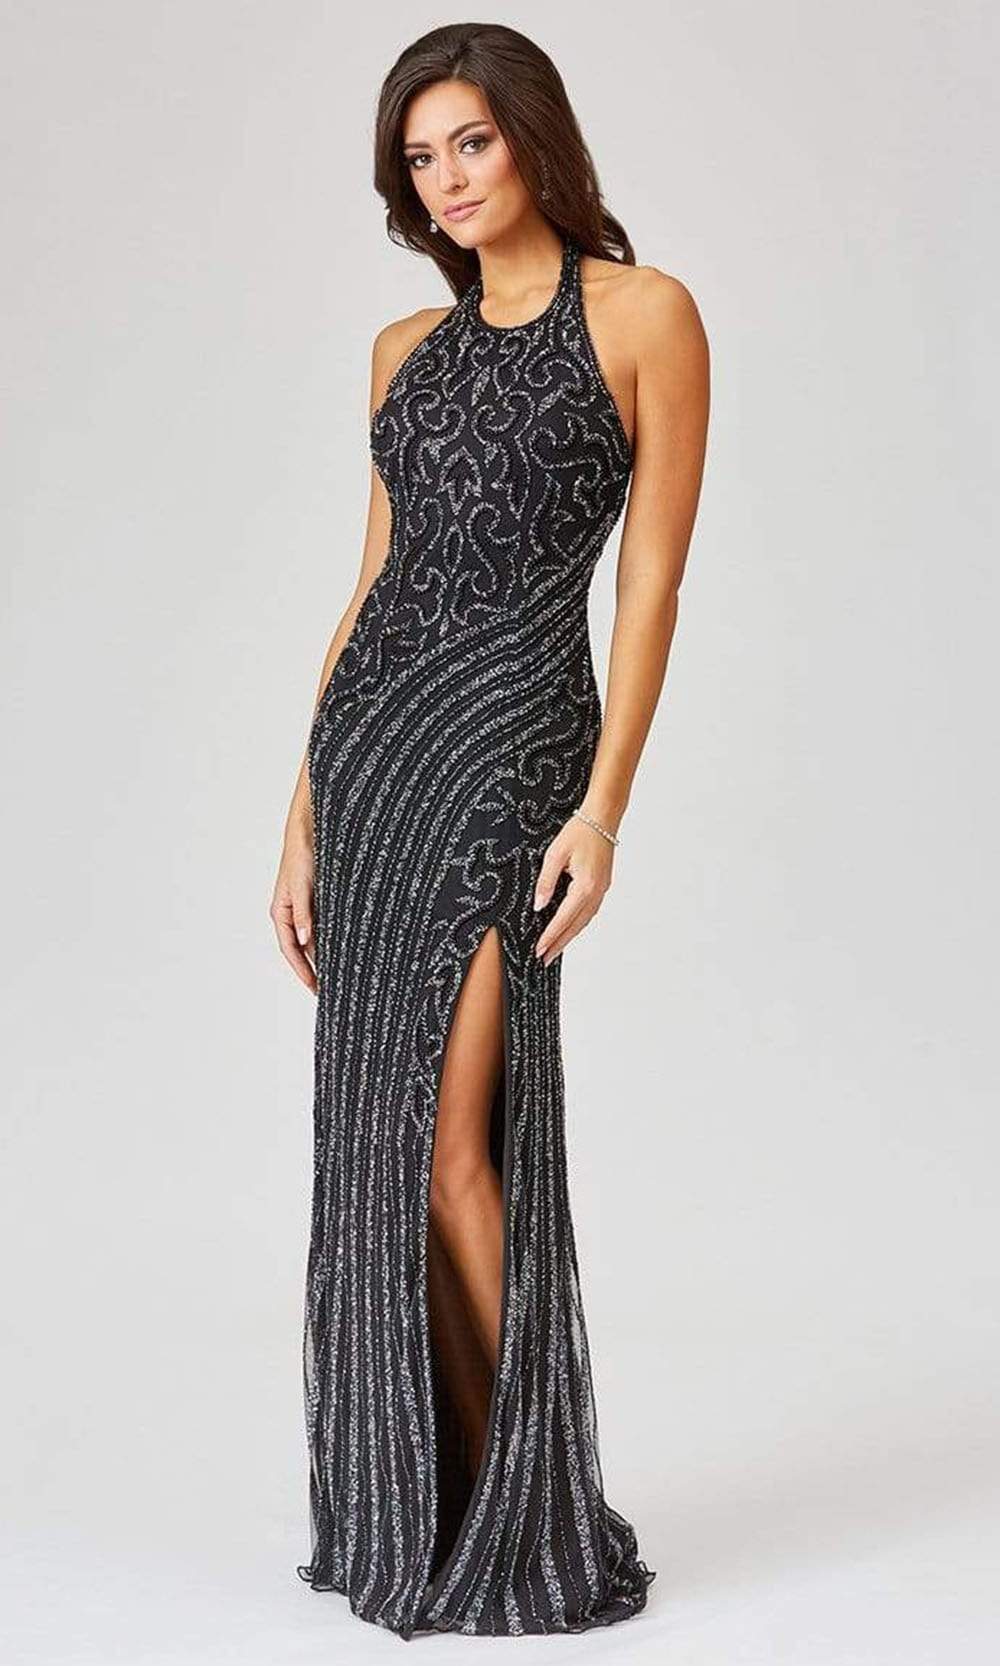 Lara Dresses - 29371 Halter Neck High-Slit Fully Embellished Dress Evening Dresses 0 / Black